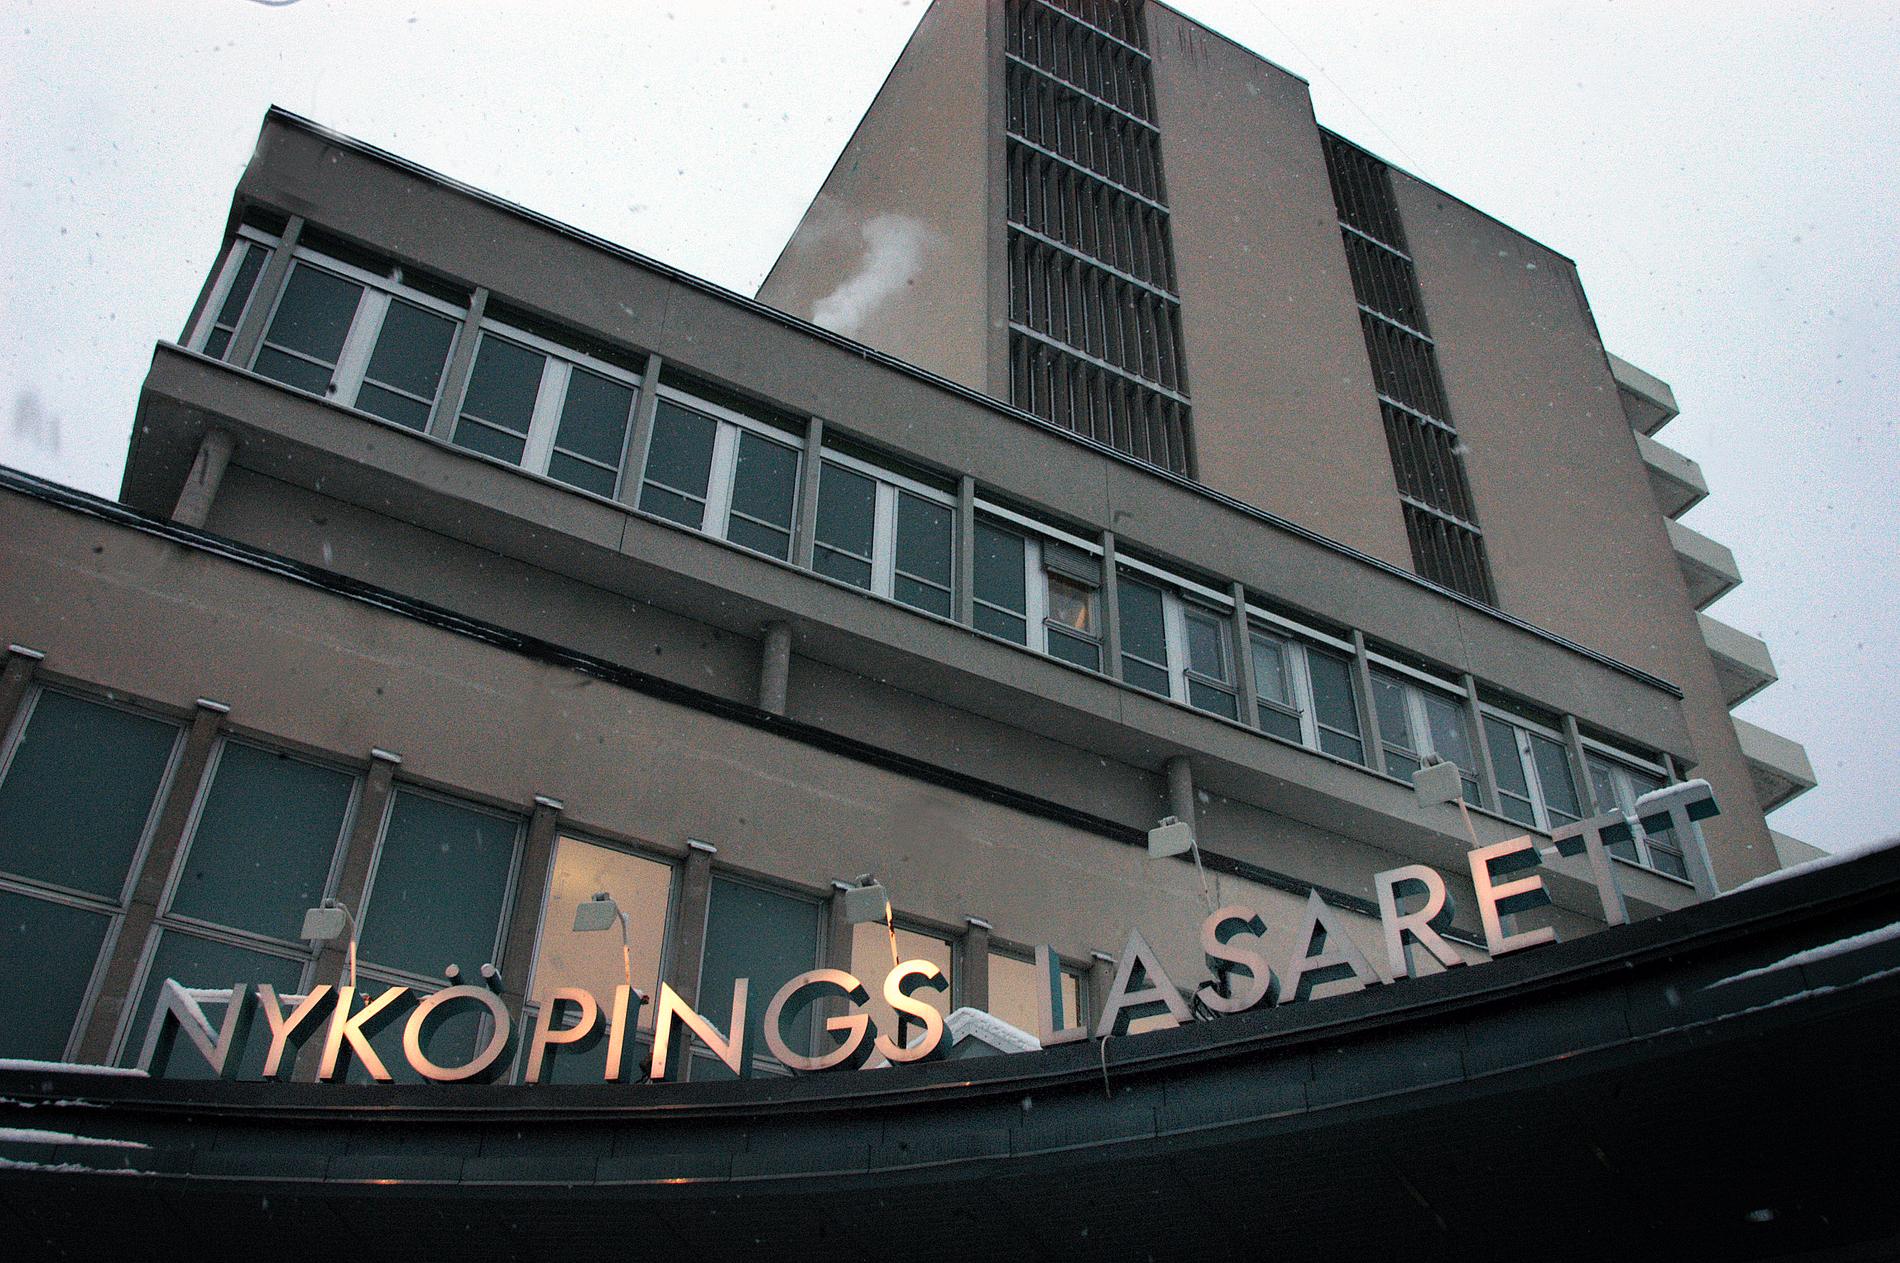 33 fall av den resistenta tarmbakterien VRE har konstaterats på Nyköpings lasarett.